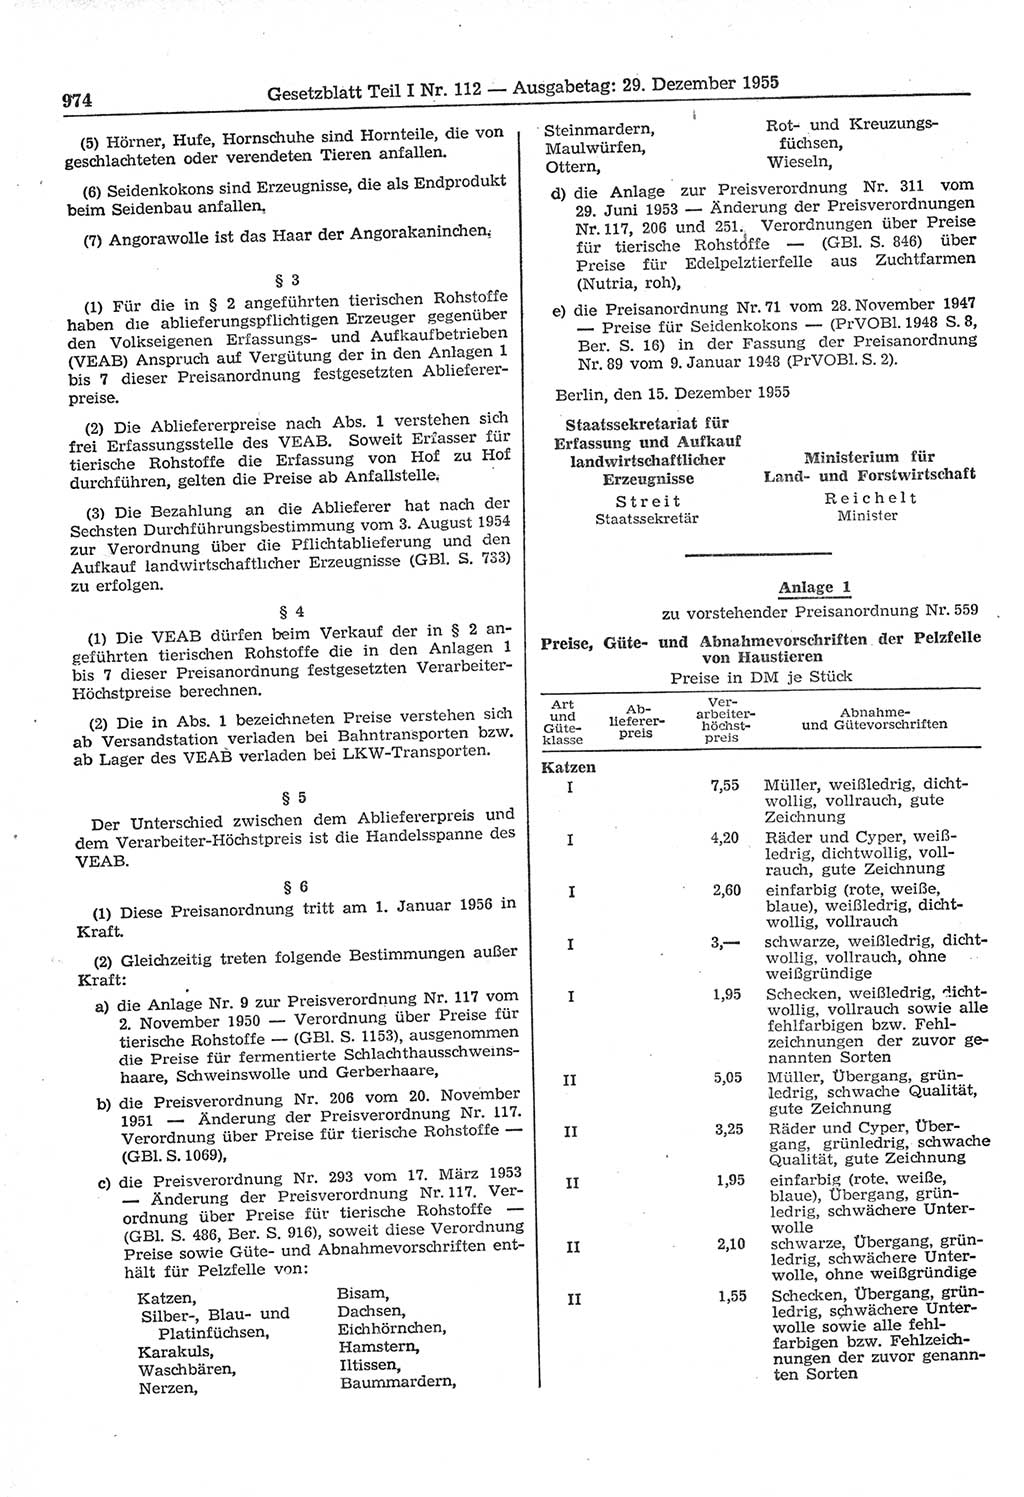 Gesetzblatt (GBl.) der Deutschen Demokratischen Republik (DDR) Teil Ⅰ 1955, Seite 974 (GBl. DDR Ⅰ 1955, S. 974)